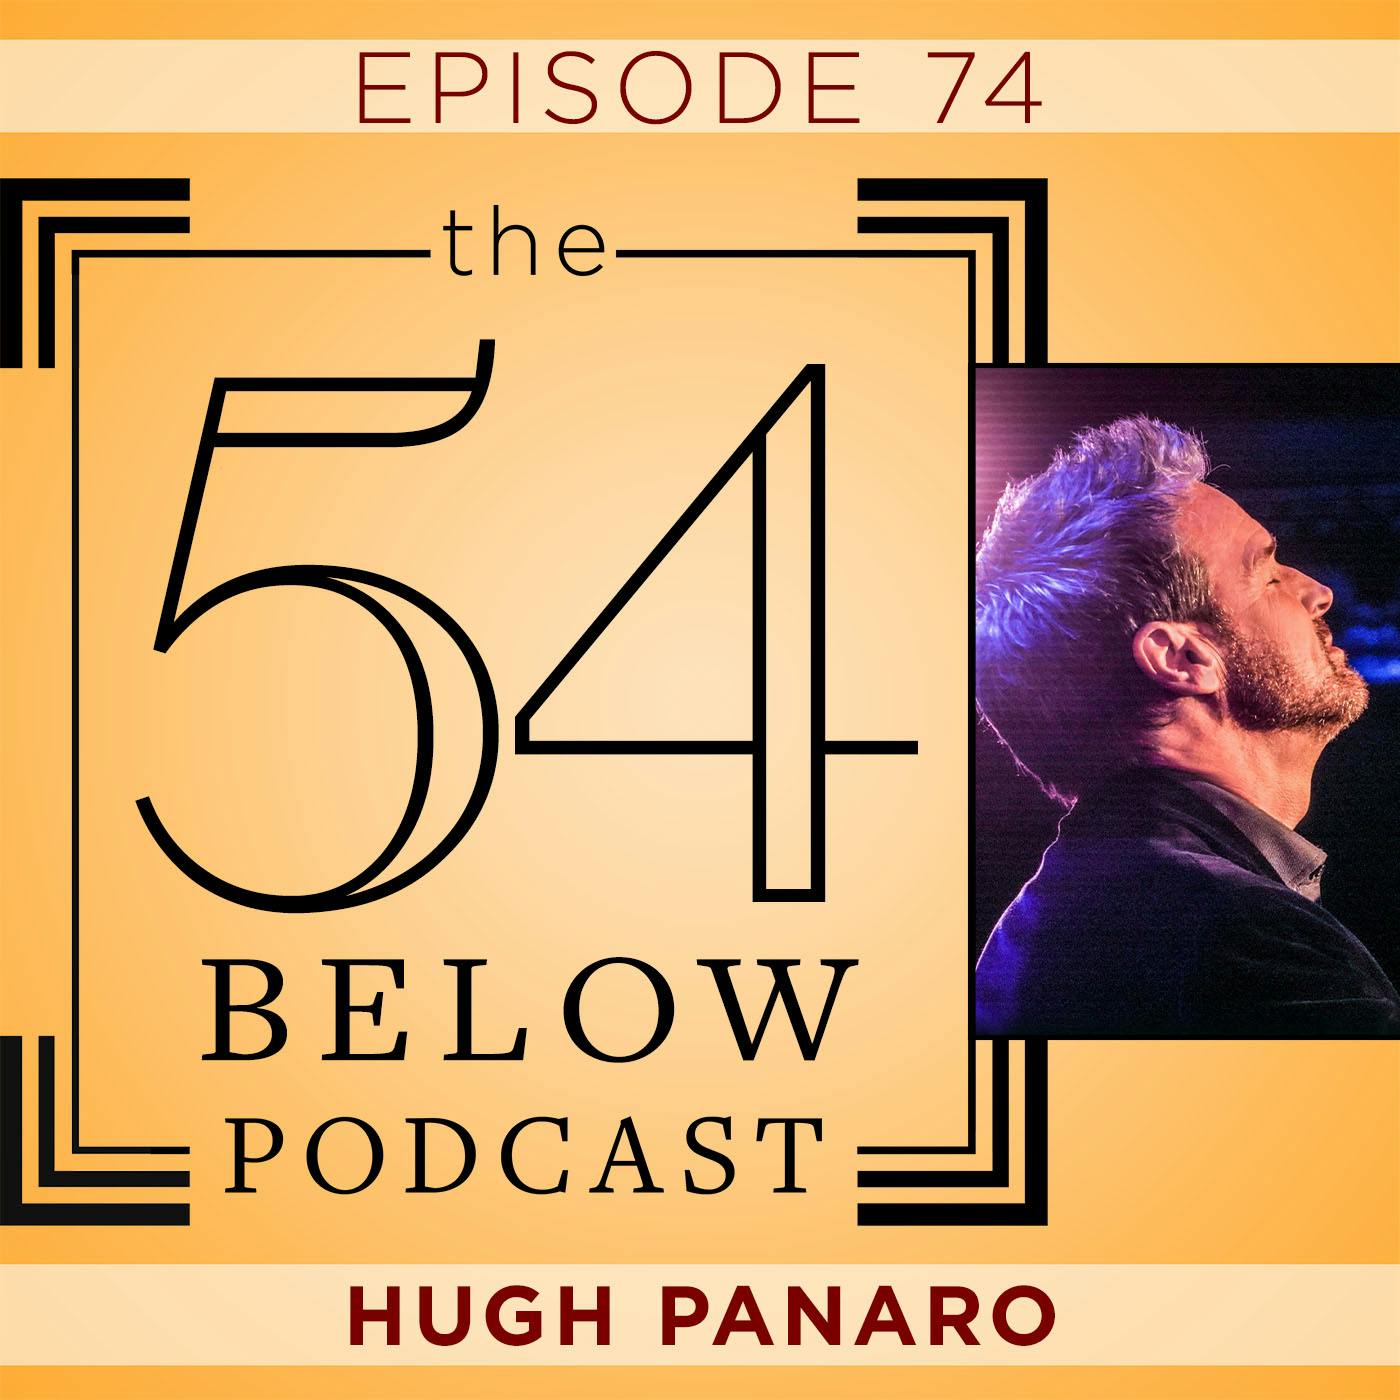 Episode 74: HUGH PANARO